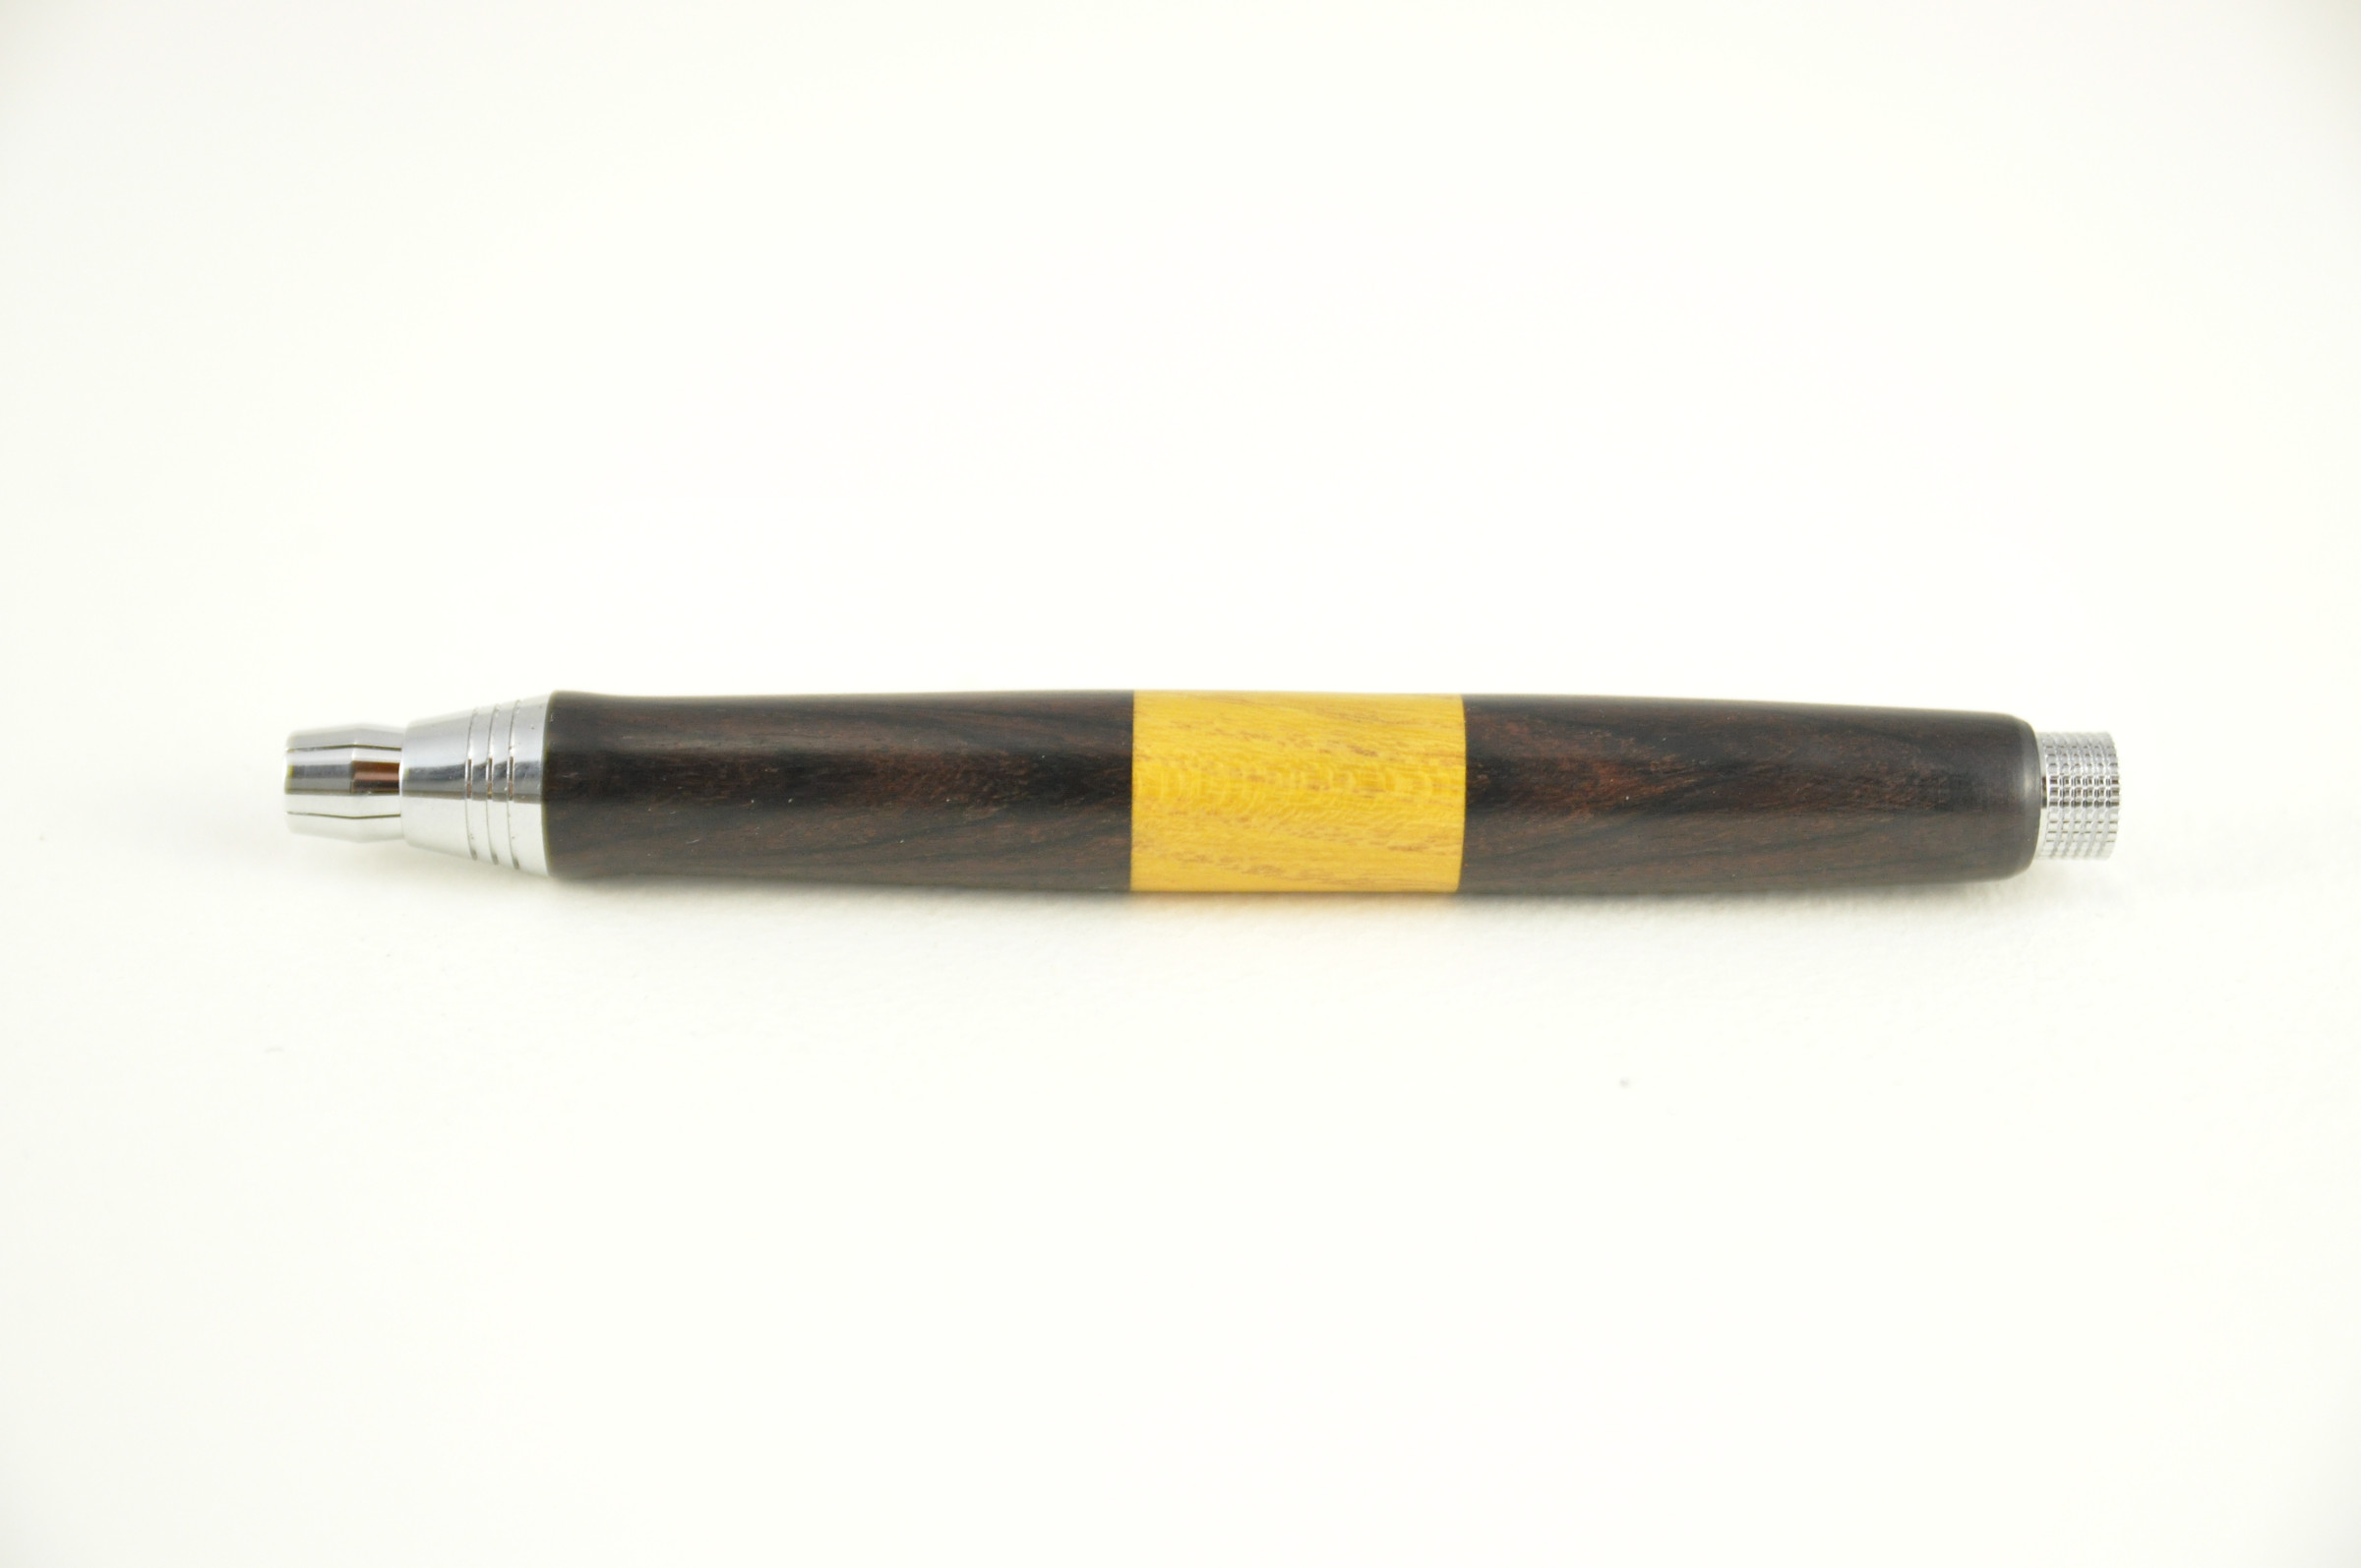 5.6mm mechanicals pencils